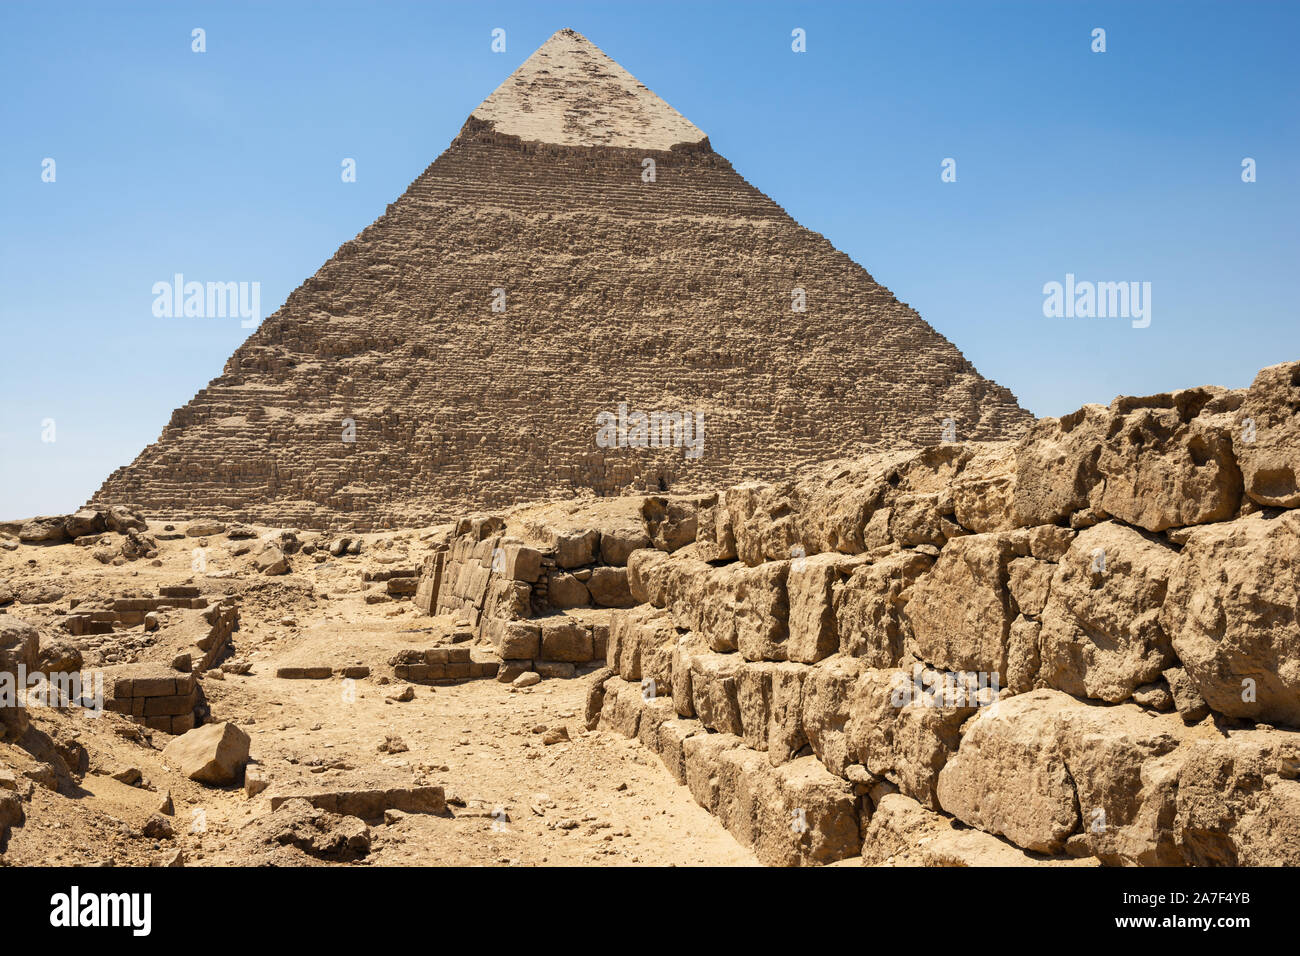 Strada alla piramide di Khafre (leggi anche come Khafra, Khefren) o di Chephren è il secondo più alto e la seconda più grande delle antiche piramidi egiziane di G Foto Stock